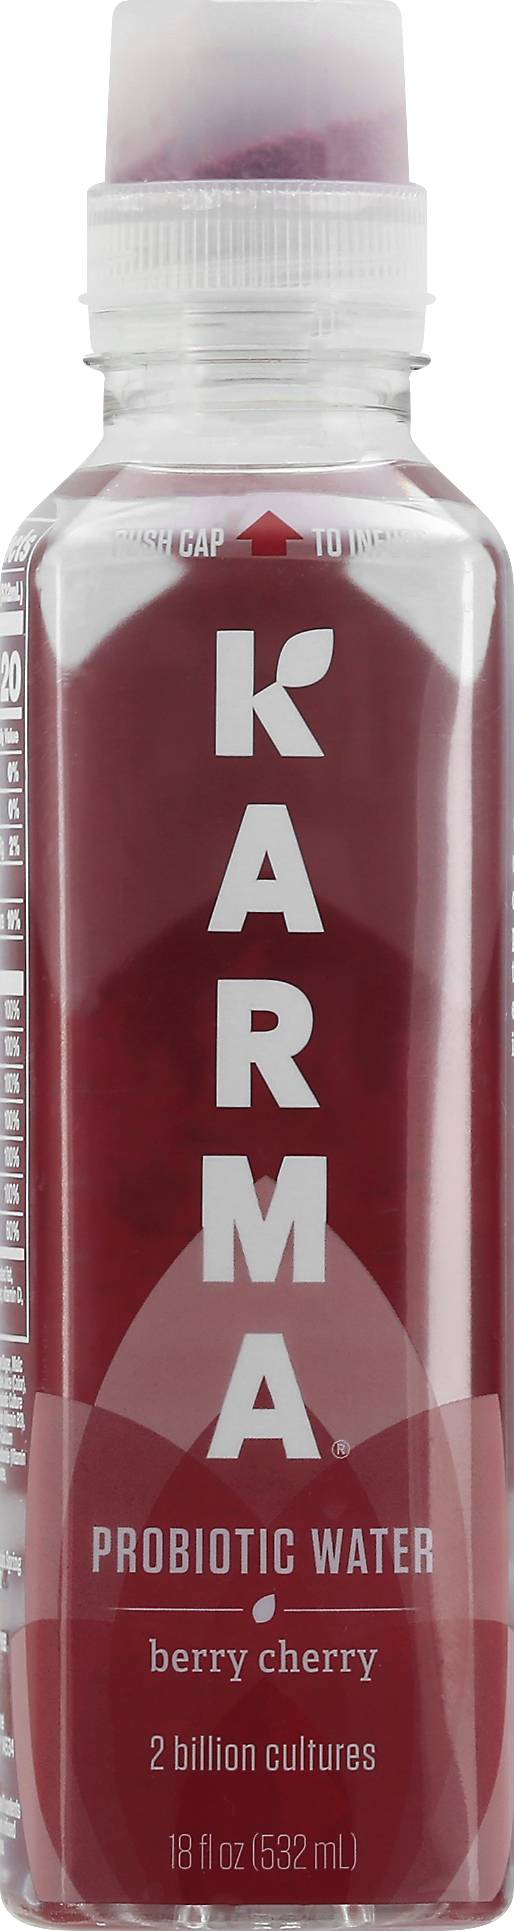 Karma Berry Cherry Probiotic Water (18 fl oz)